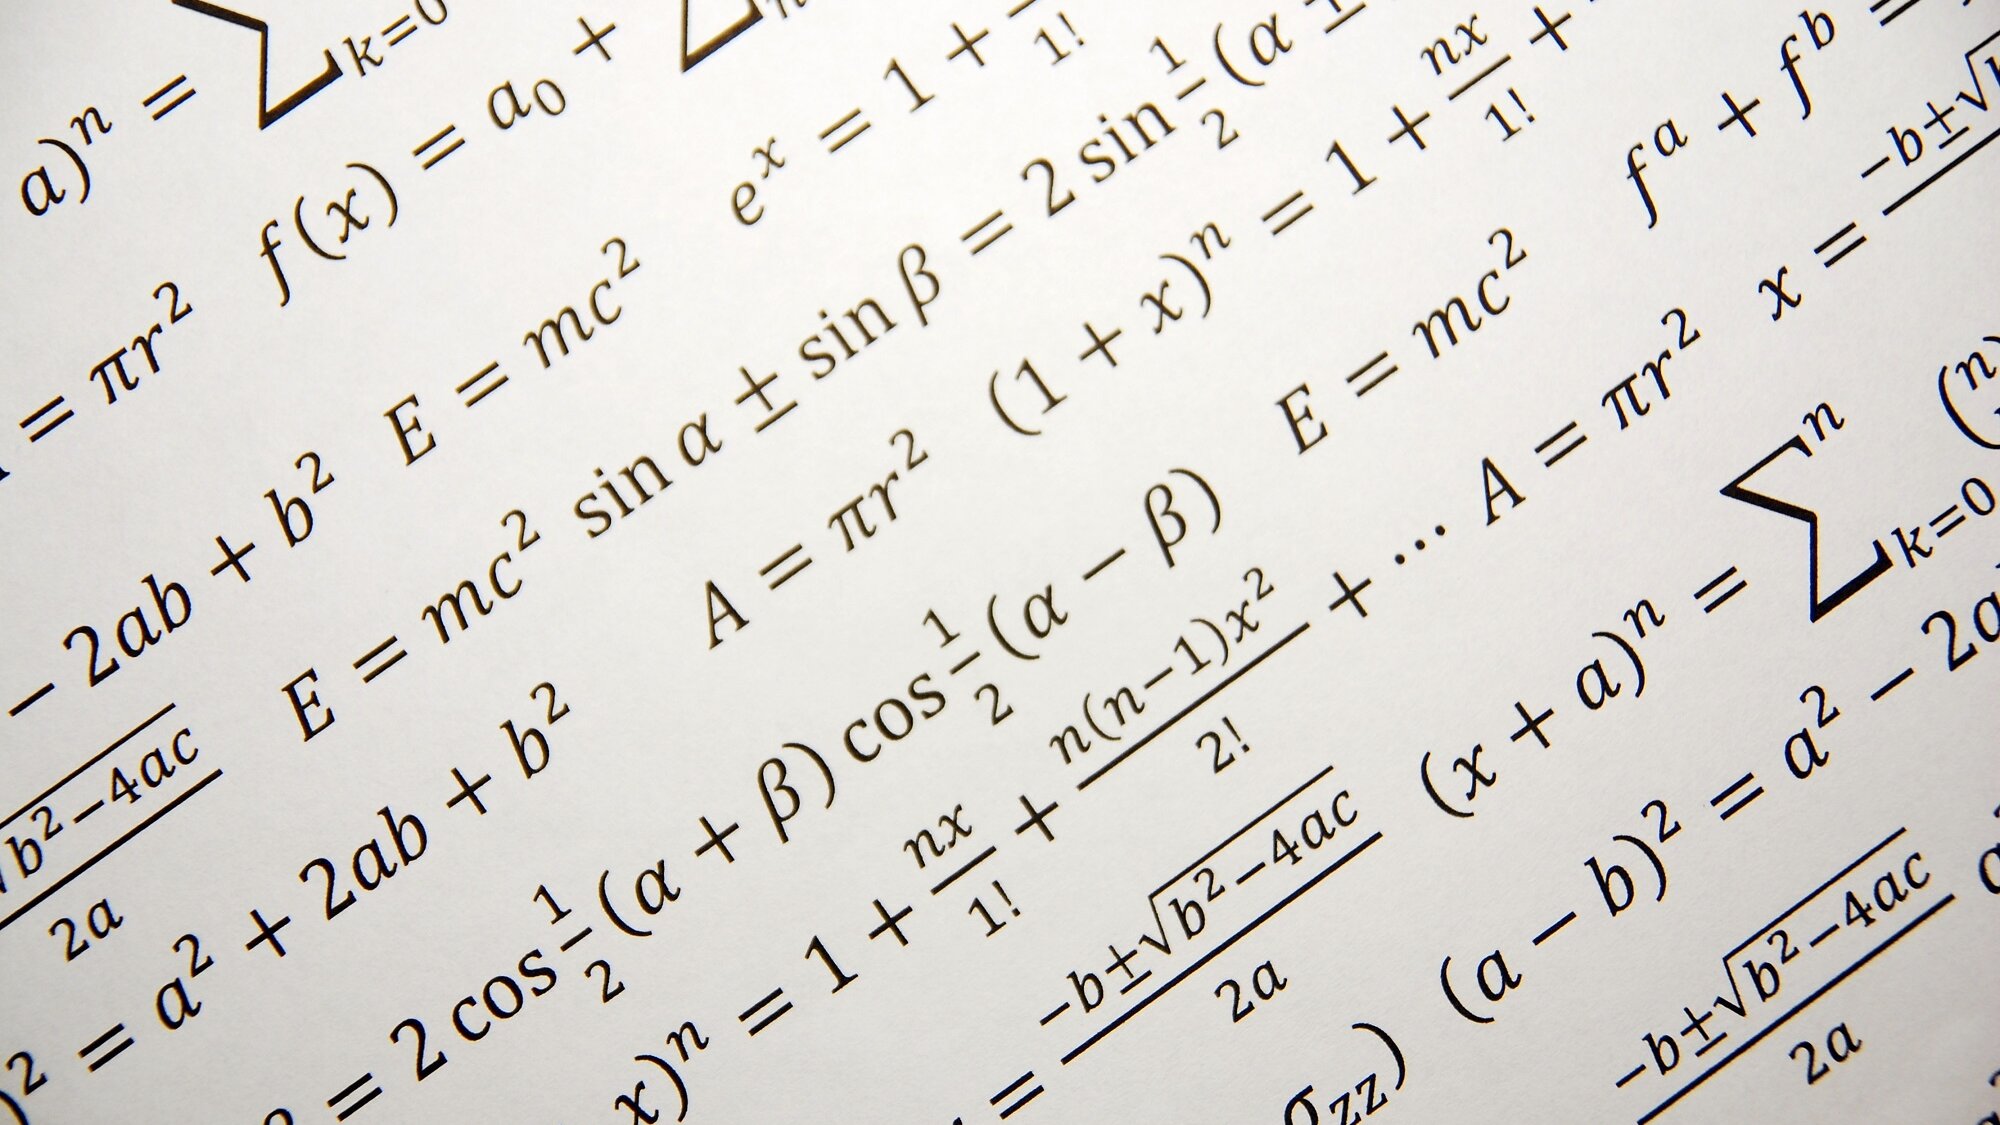 Illustrative image showing mathematical formulas.